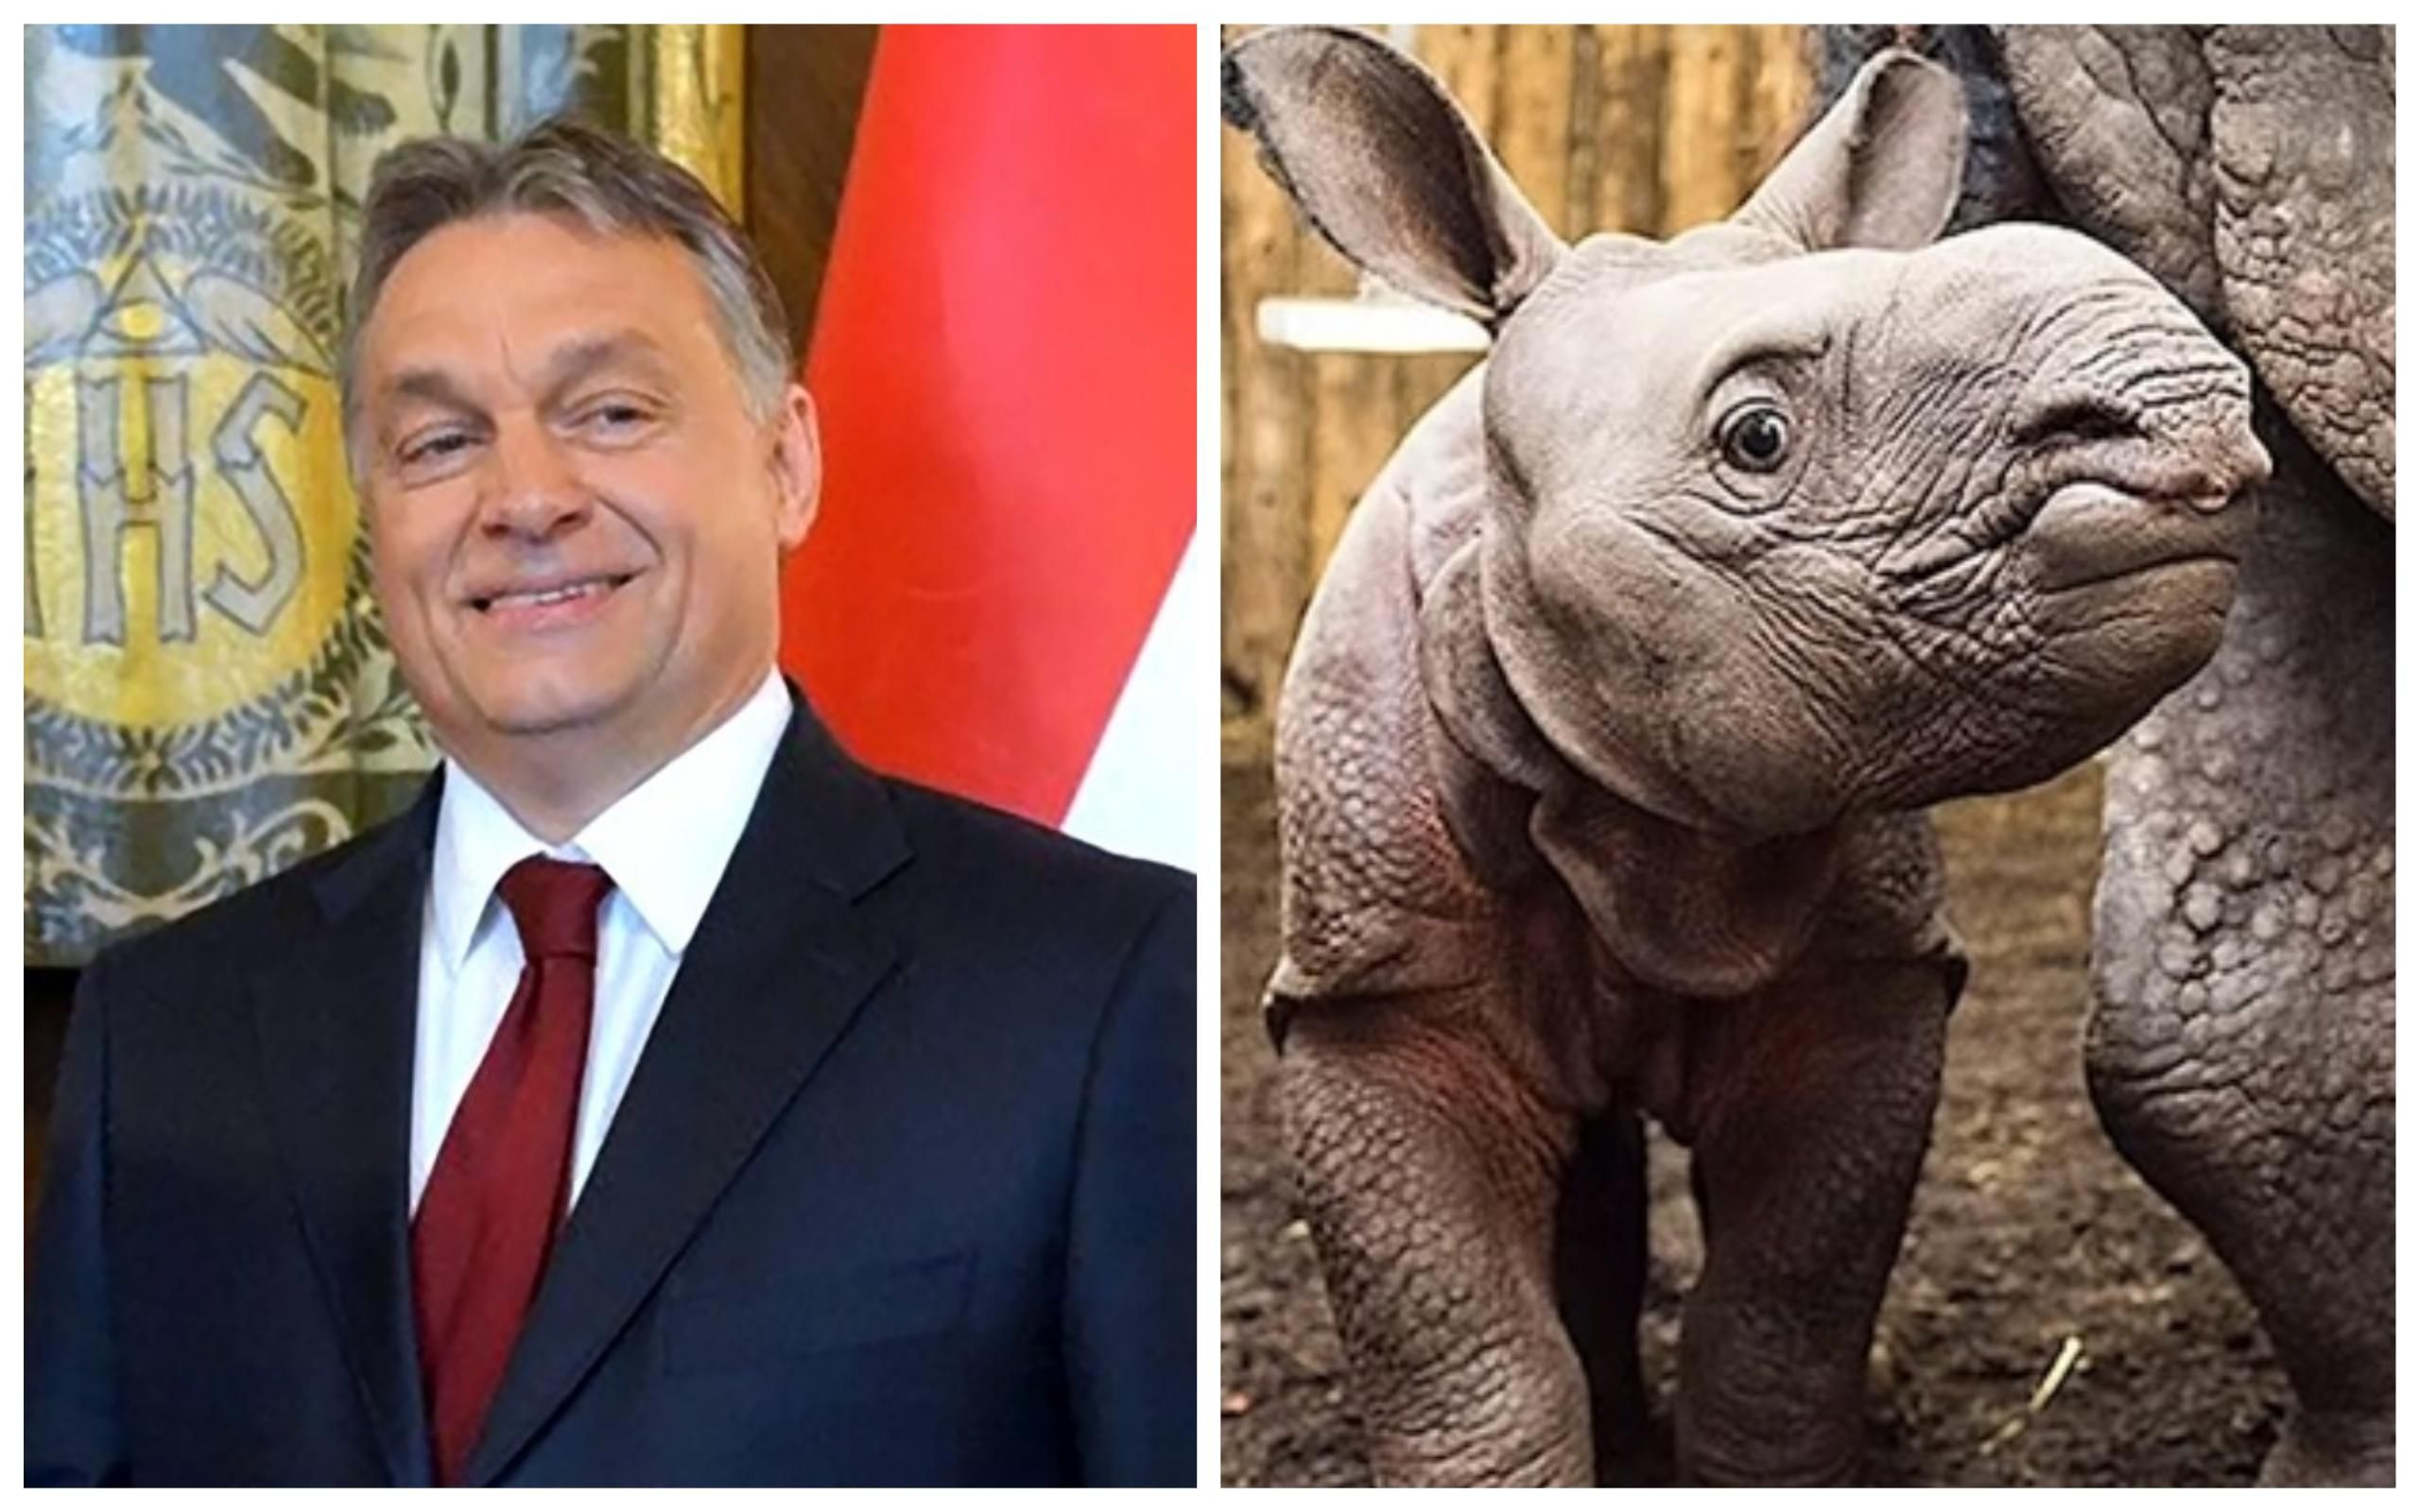 Венгерский премьер Орбан "усыновил" носорога: в сети выбирают животному имя